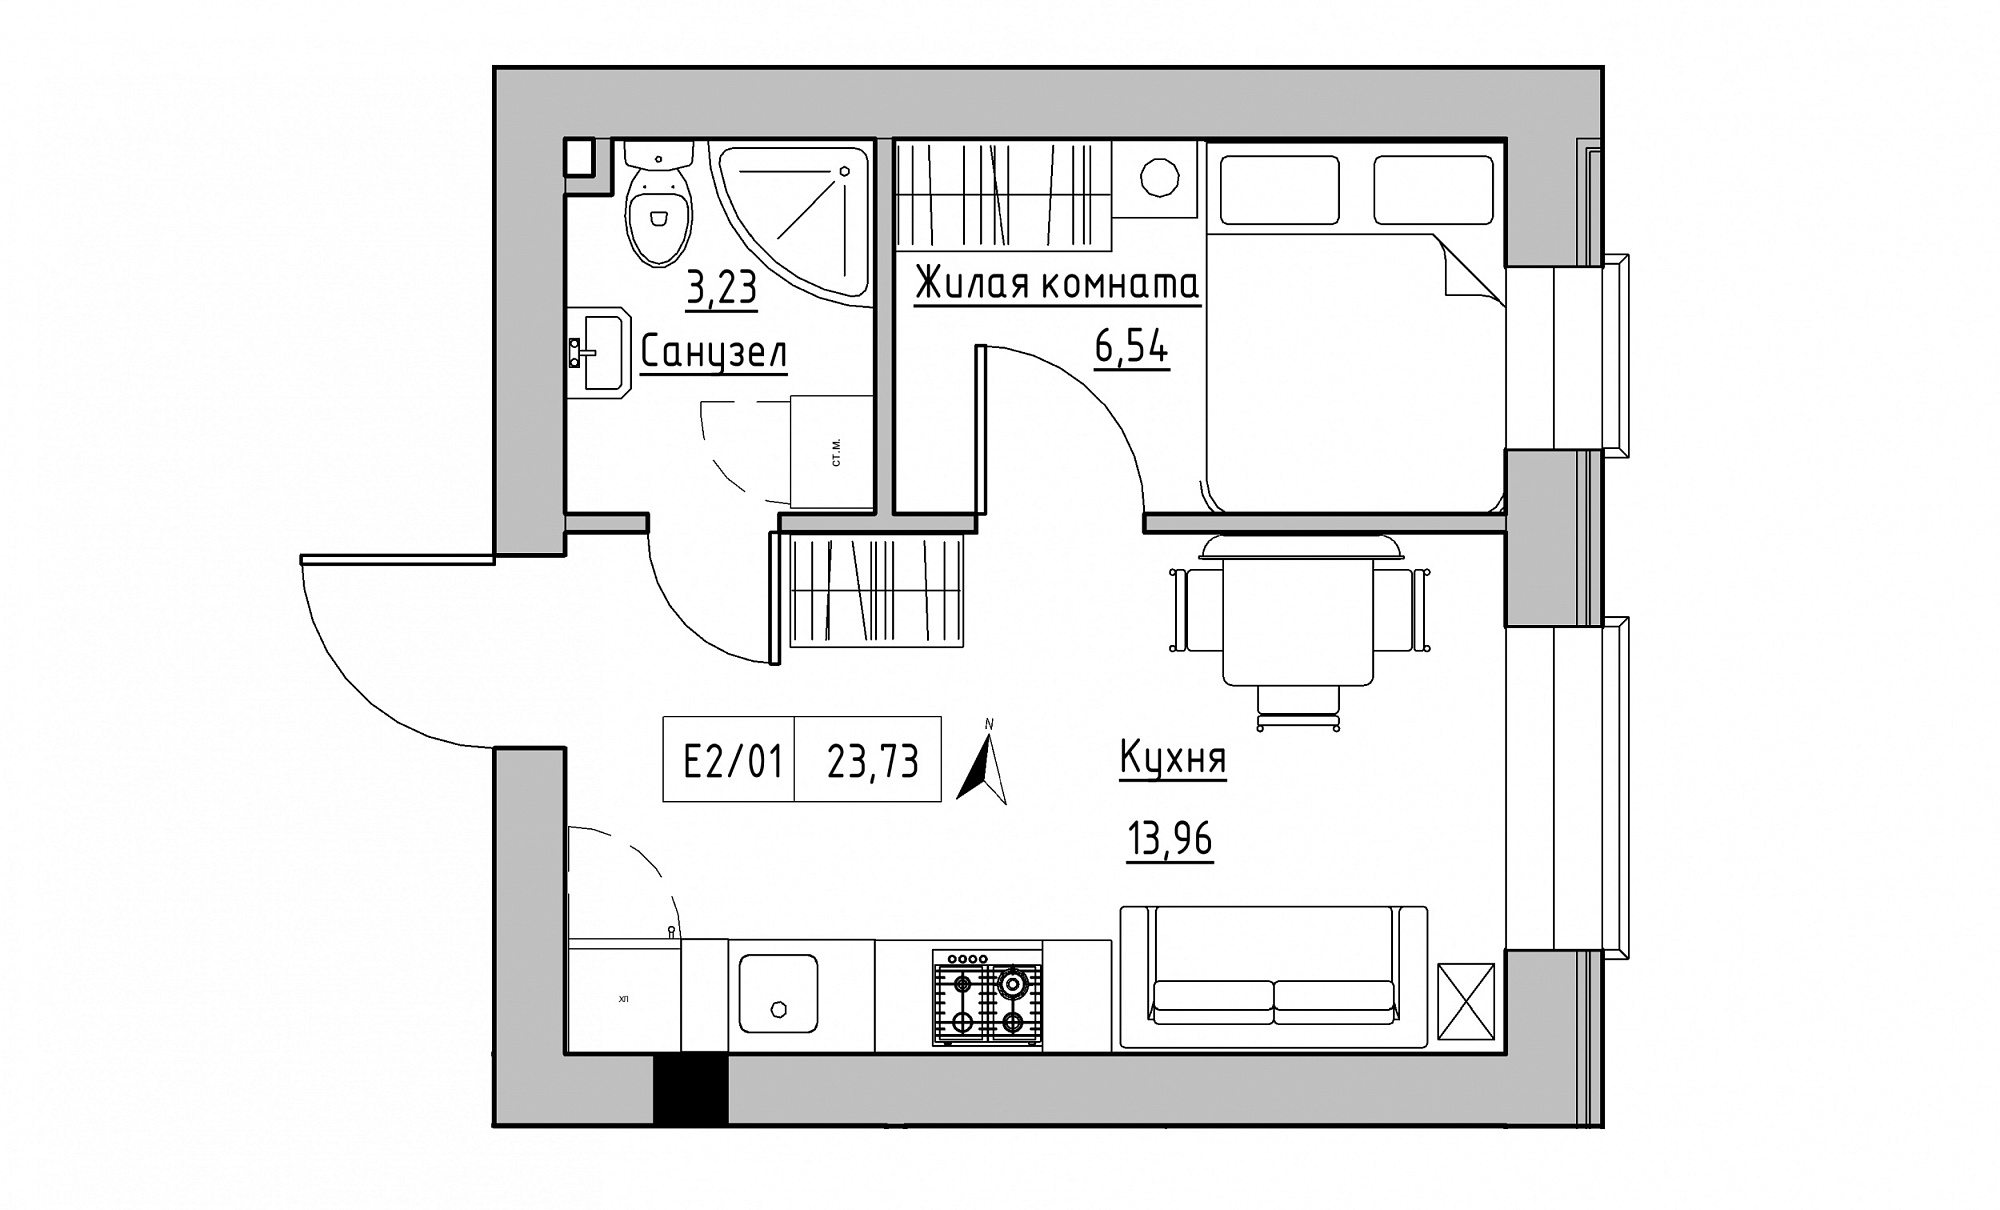 Планування 1-к квартира площею 23.73м2, KS-015-01/0007.